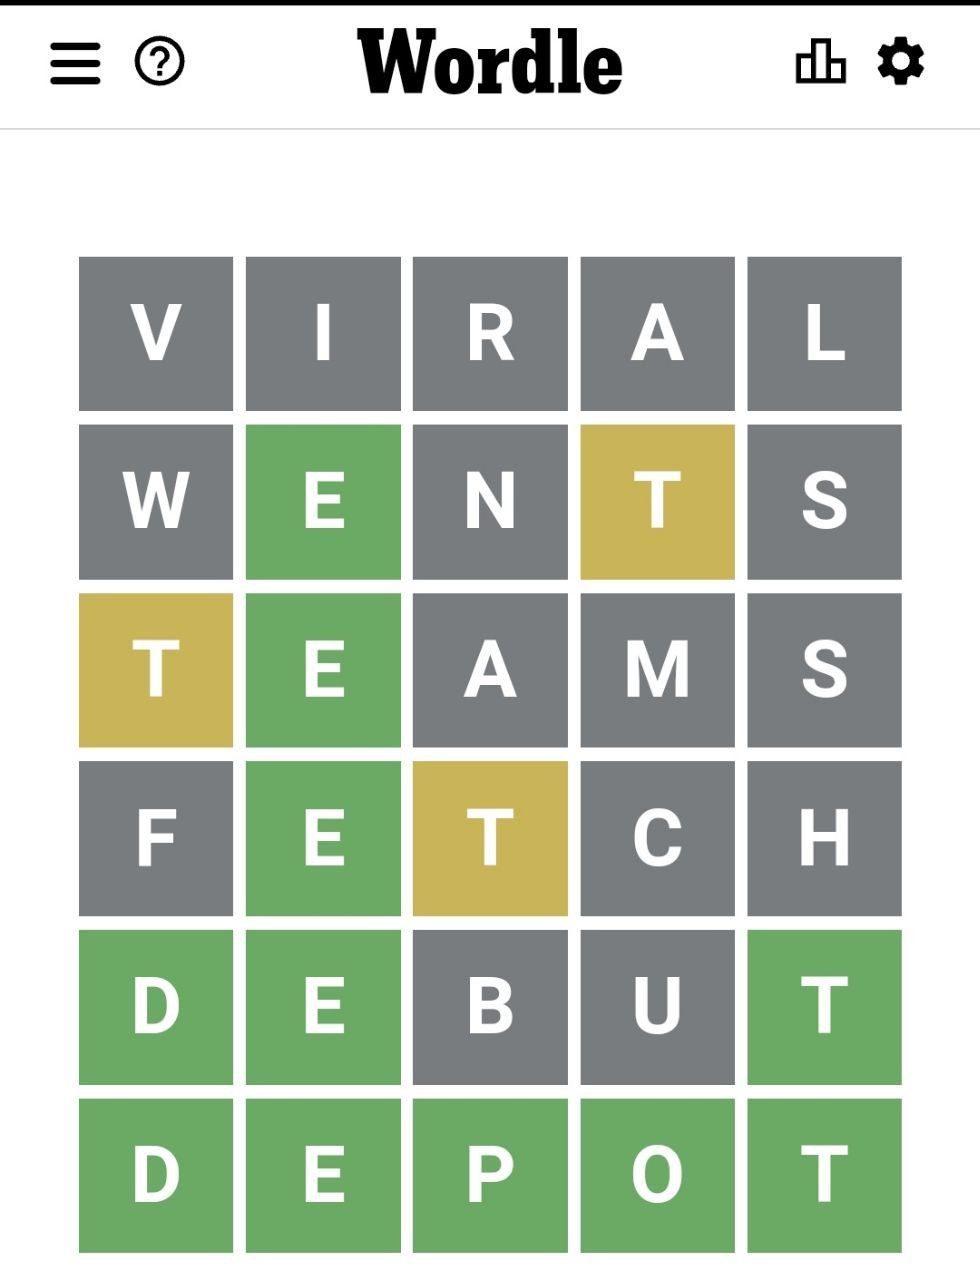 Kunci Jawaban Game Wordle Hari Ini tanggal 25 Maret 2022